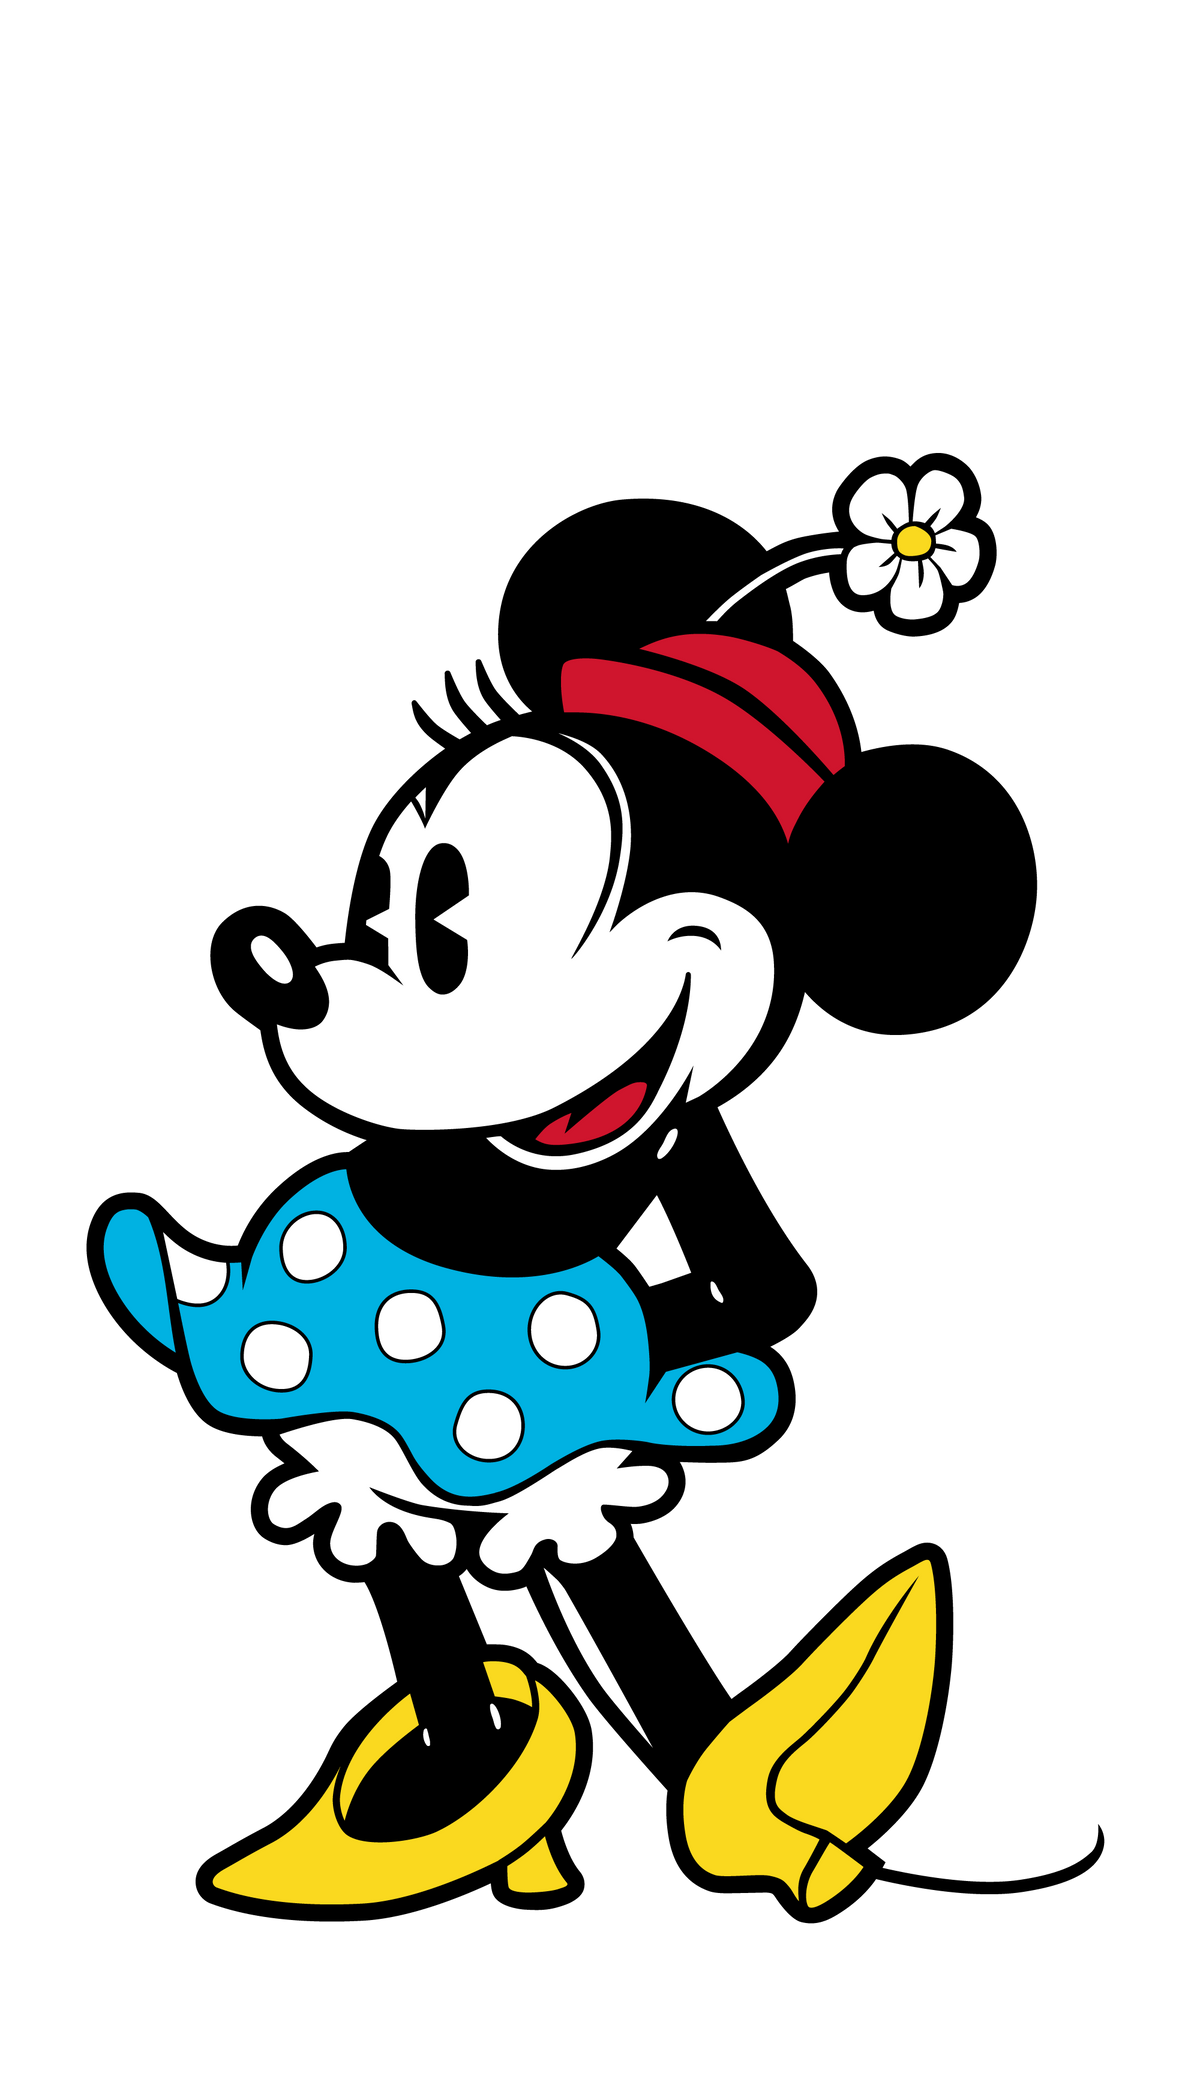 Disney - Minnie Mouse #M58 - Zlc Collectibles